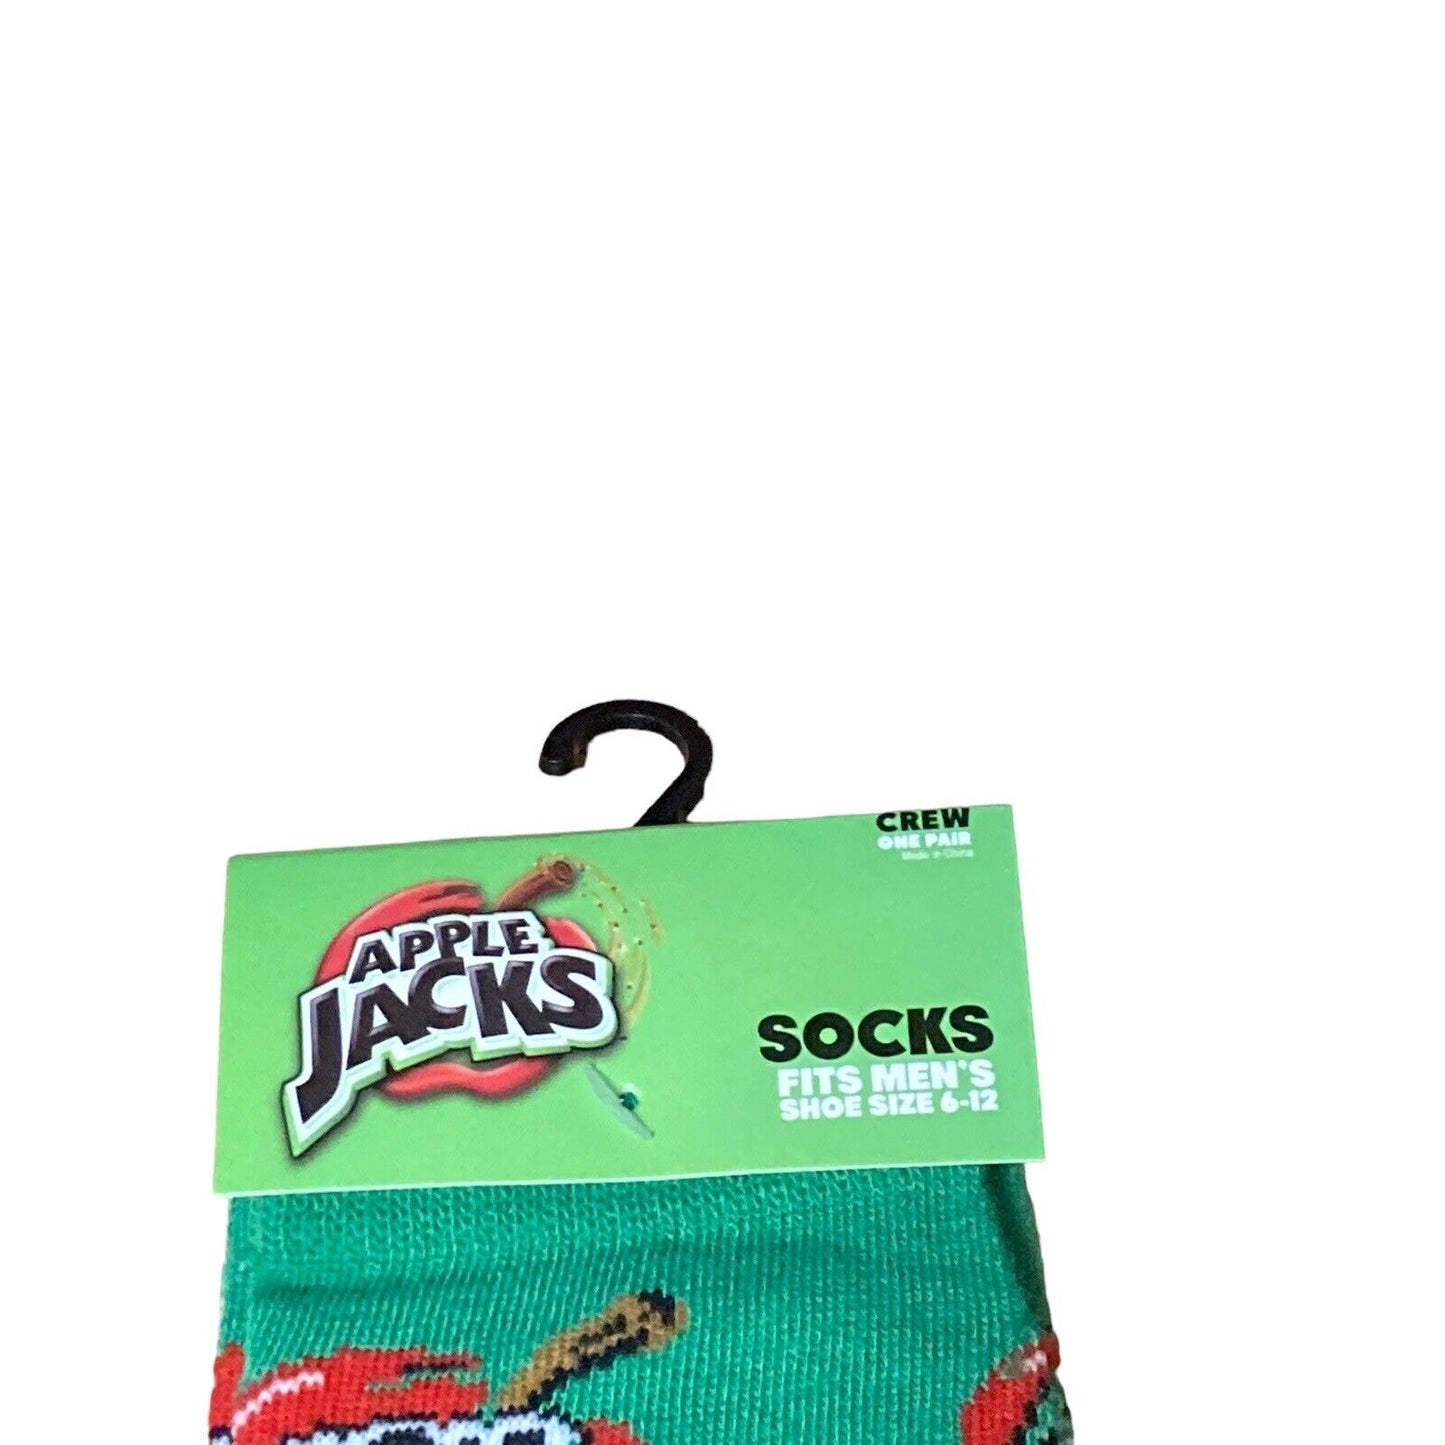 Kellogg's - Apple Jacks - Green - Size Men's 6-12 - One Pair - Novelty Socks